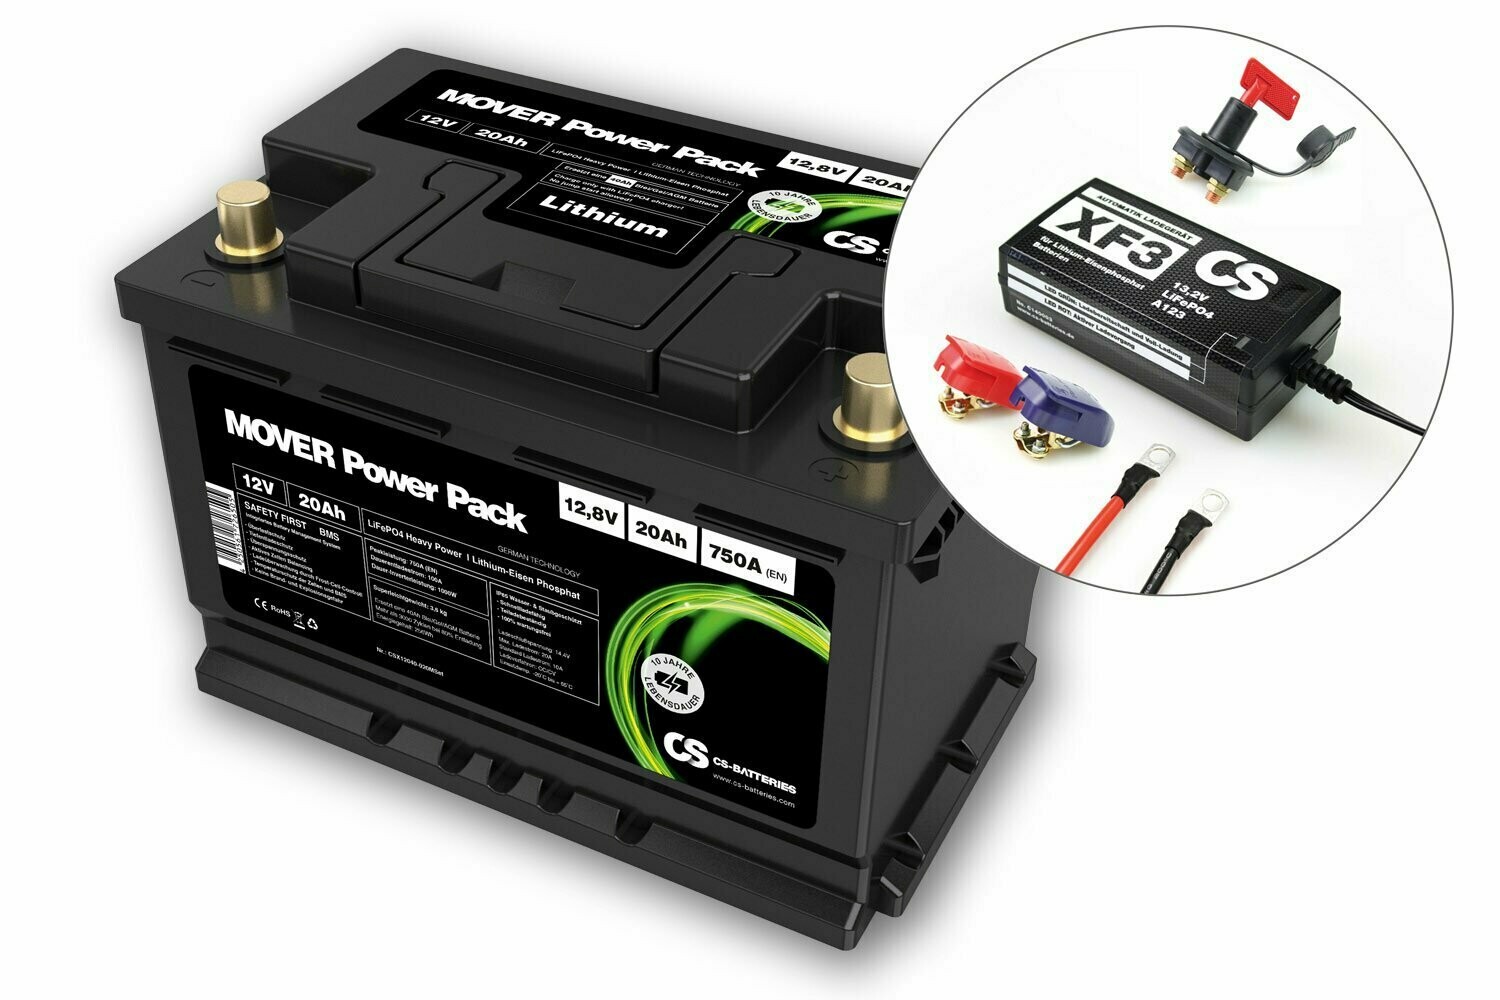 CS-Batteries Lithium Mover Power Pack Set 12,8V / 20Ah